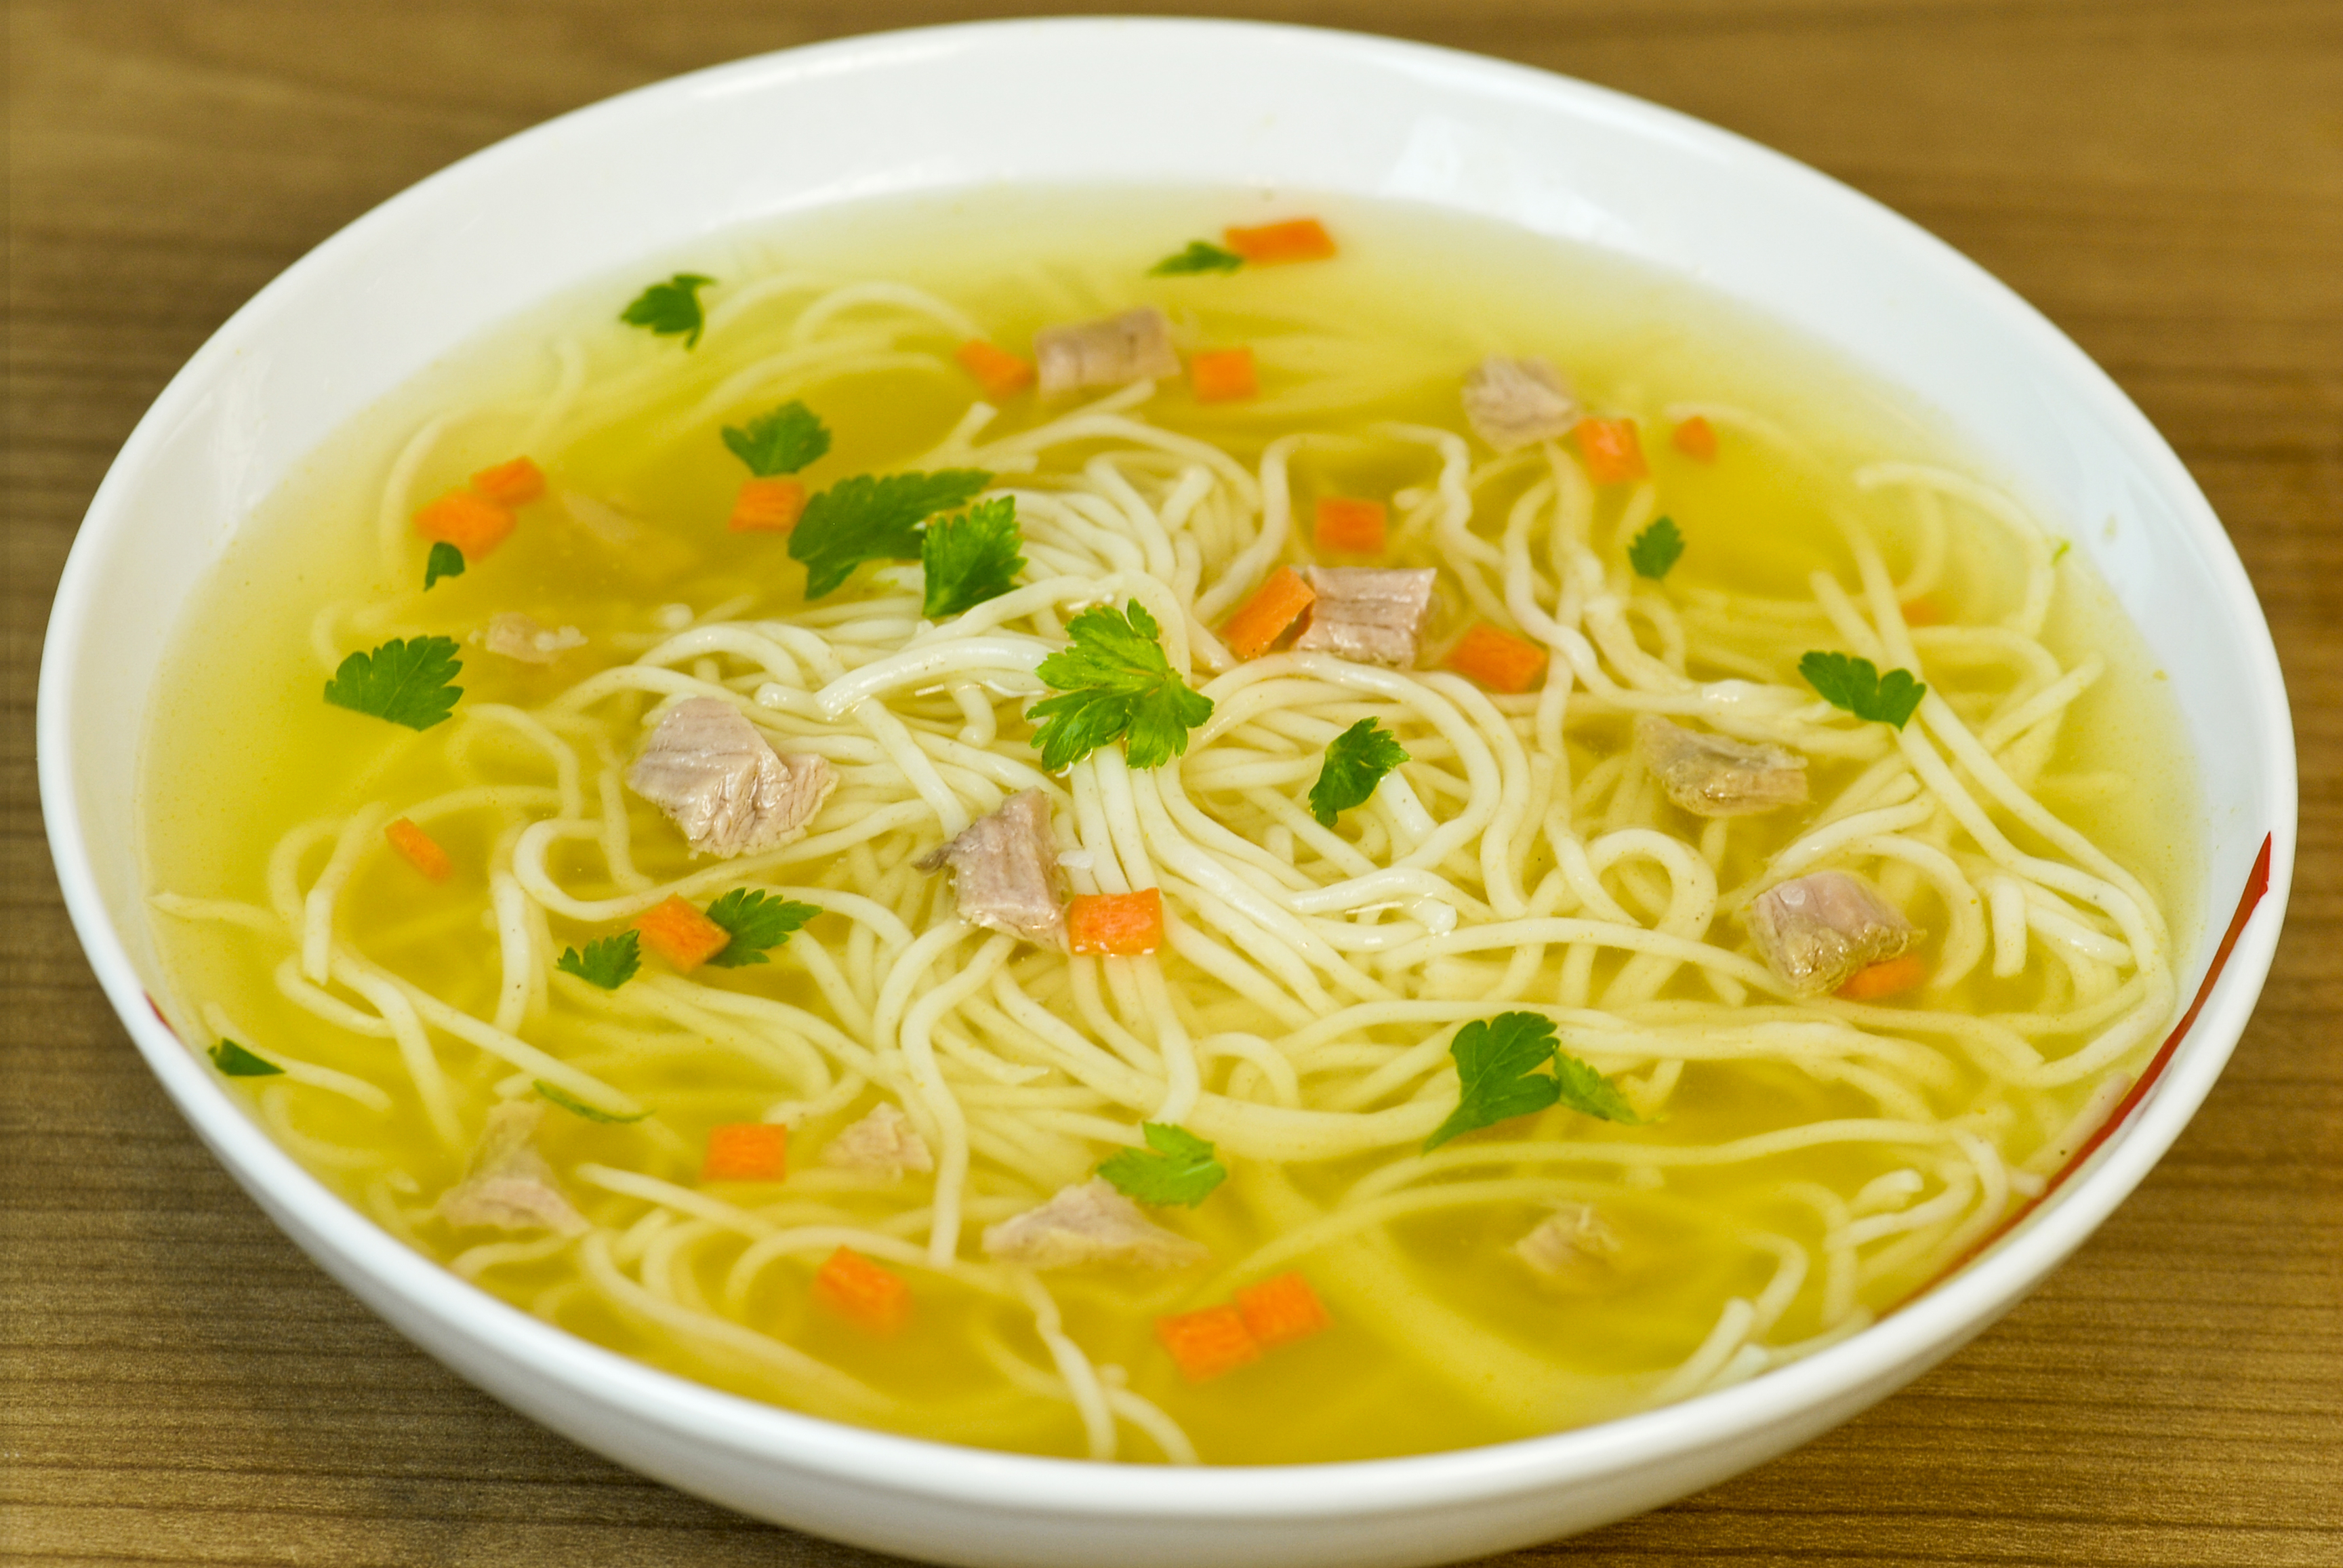 Chicken noodle soup thin noodles